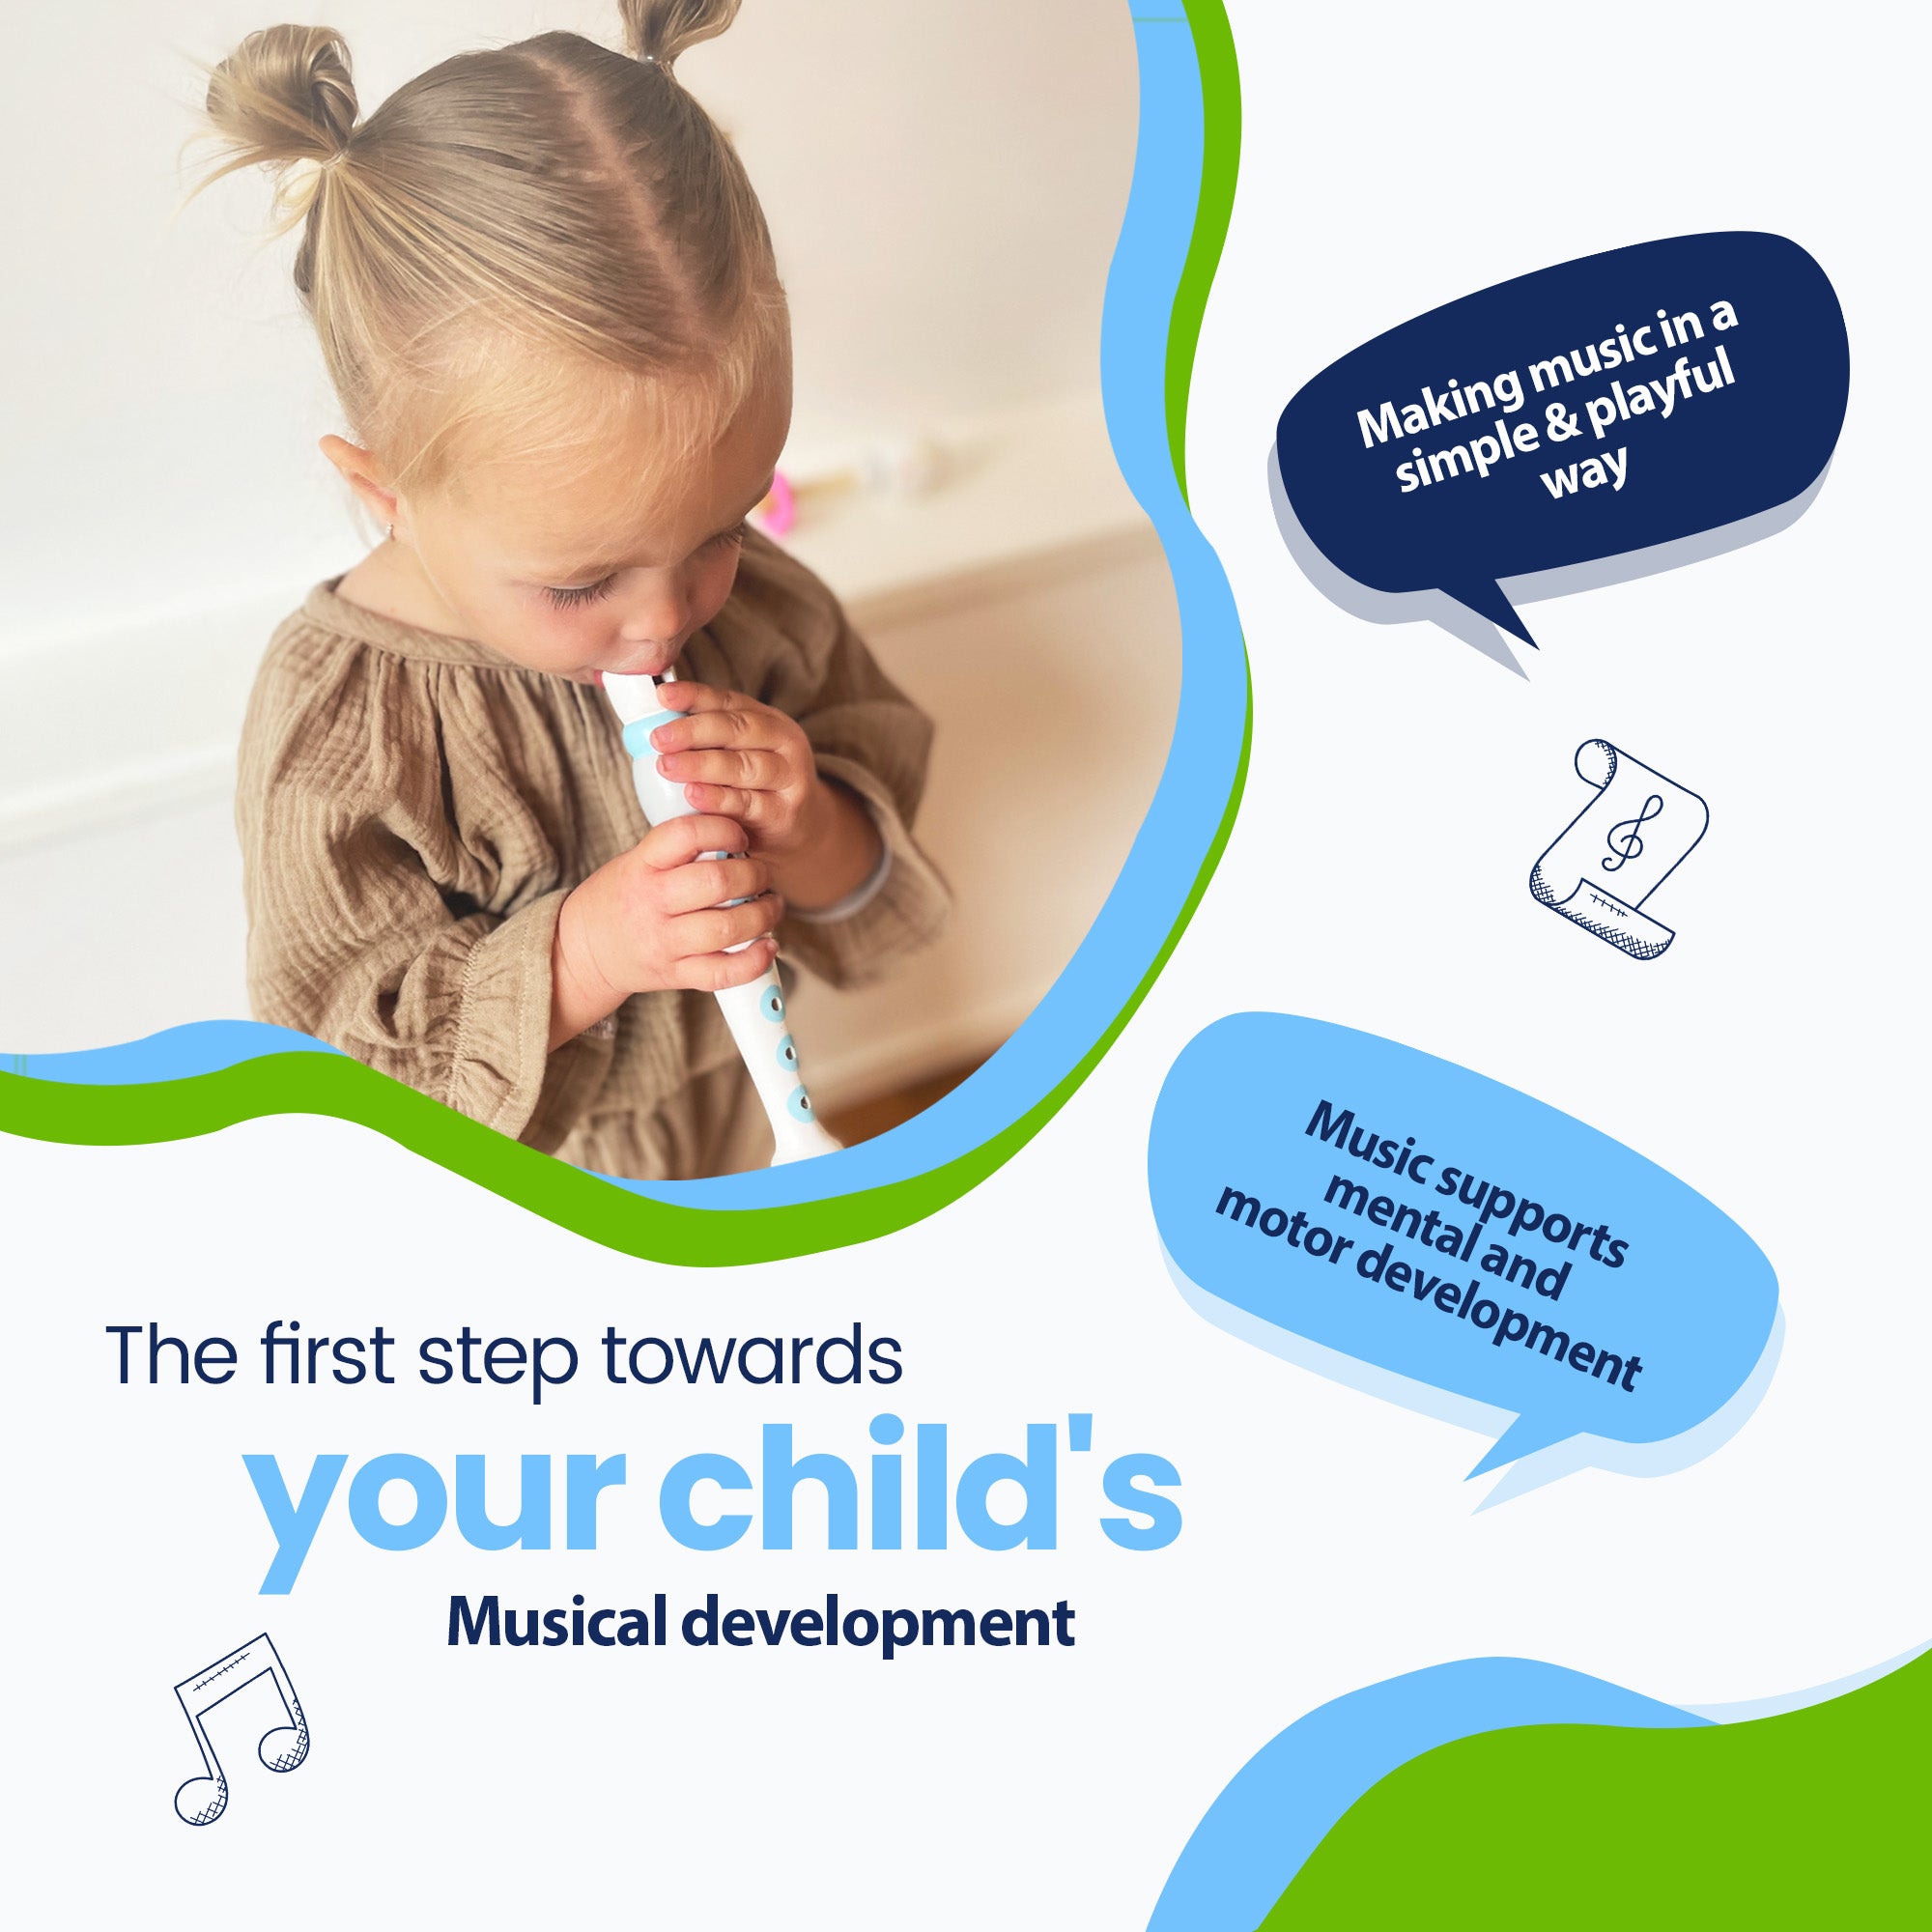 Il primo passo verso lo sviluppo musicale del tuo bambino - Fare musica in modo semplice e giocoso - La musica supporta lo sviluppo mentale e motorio